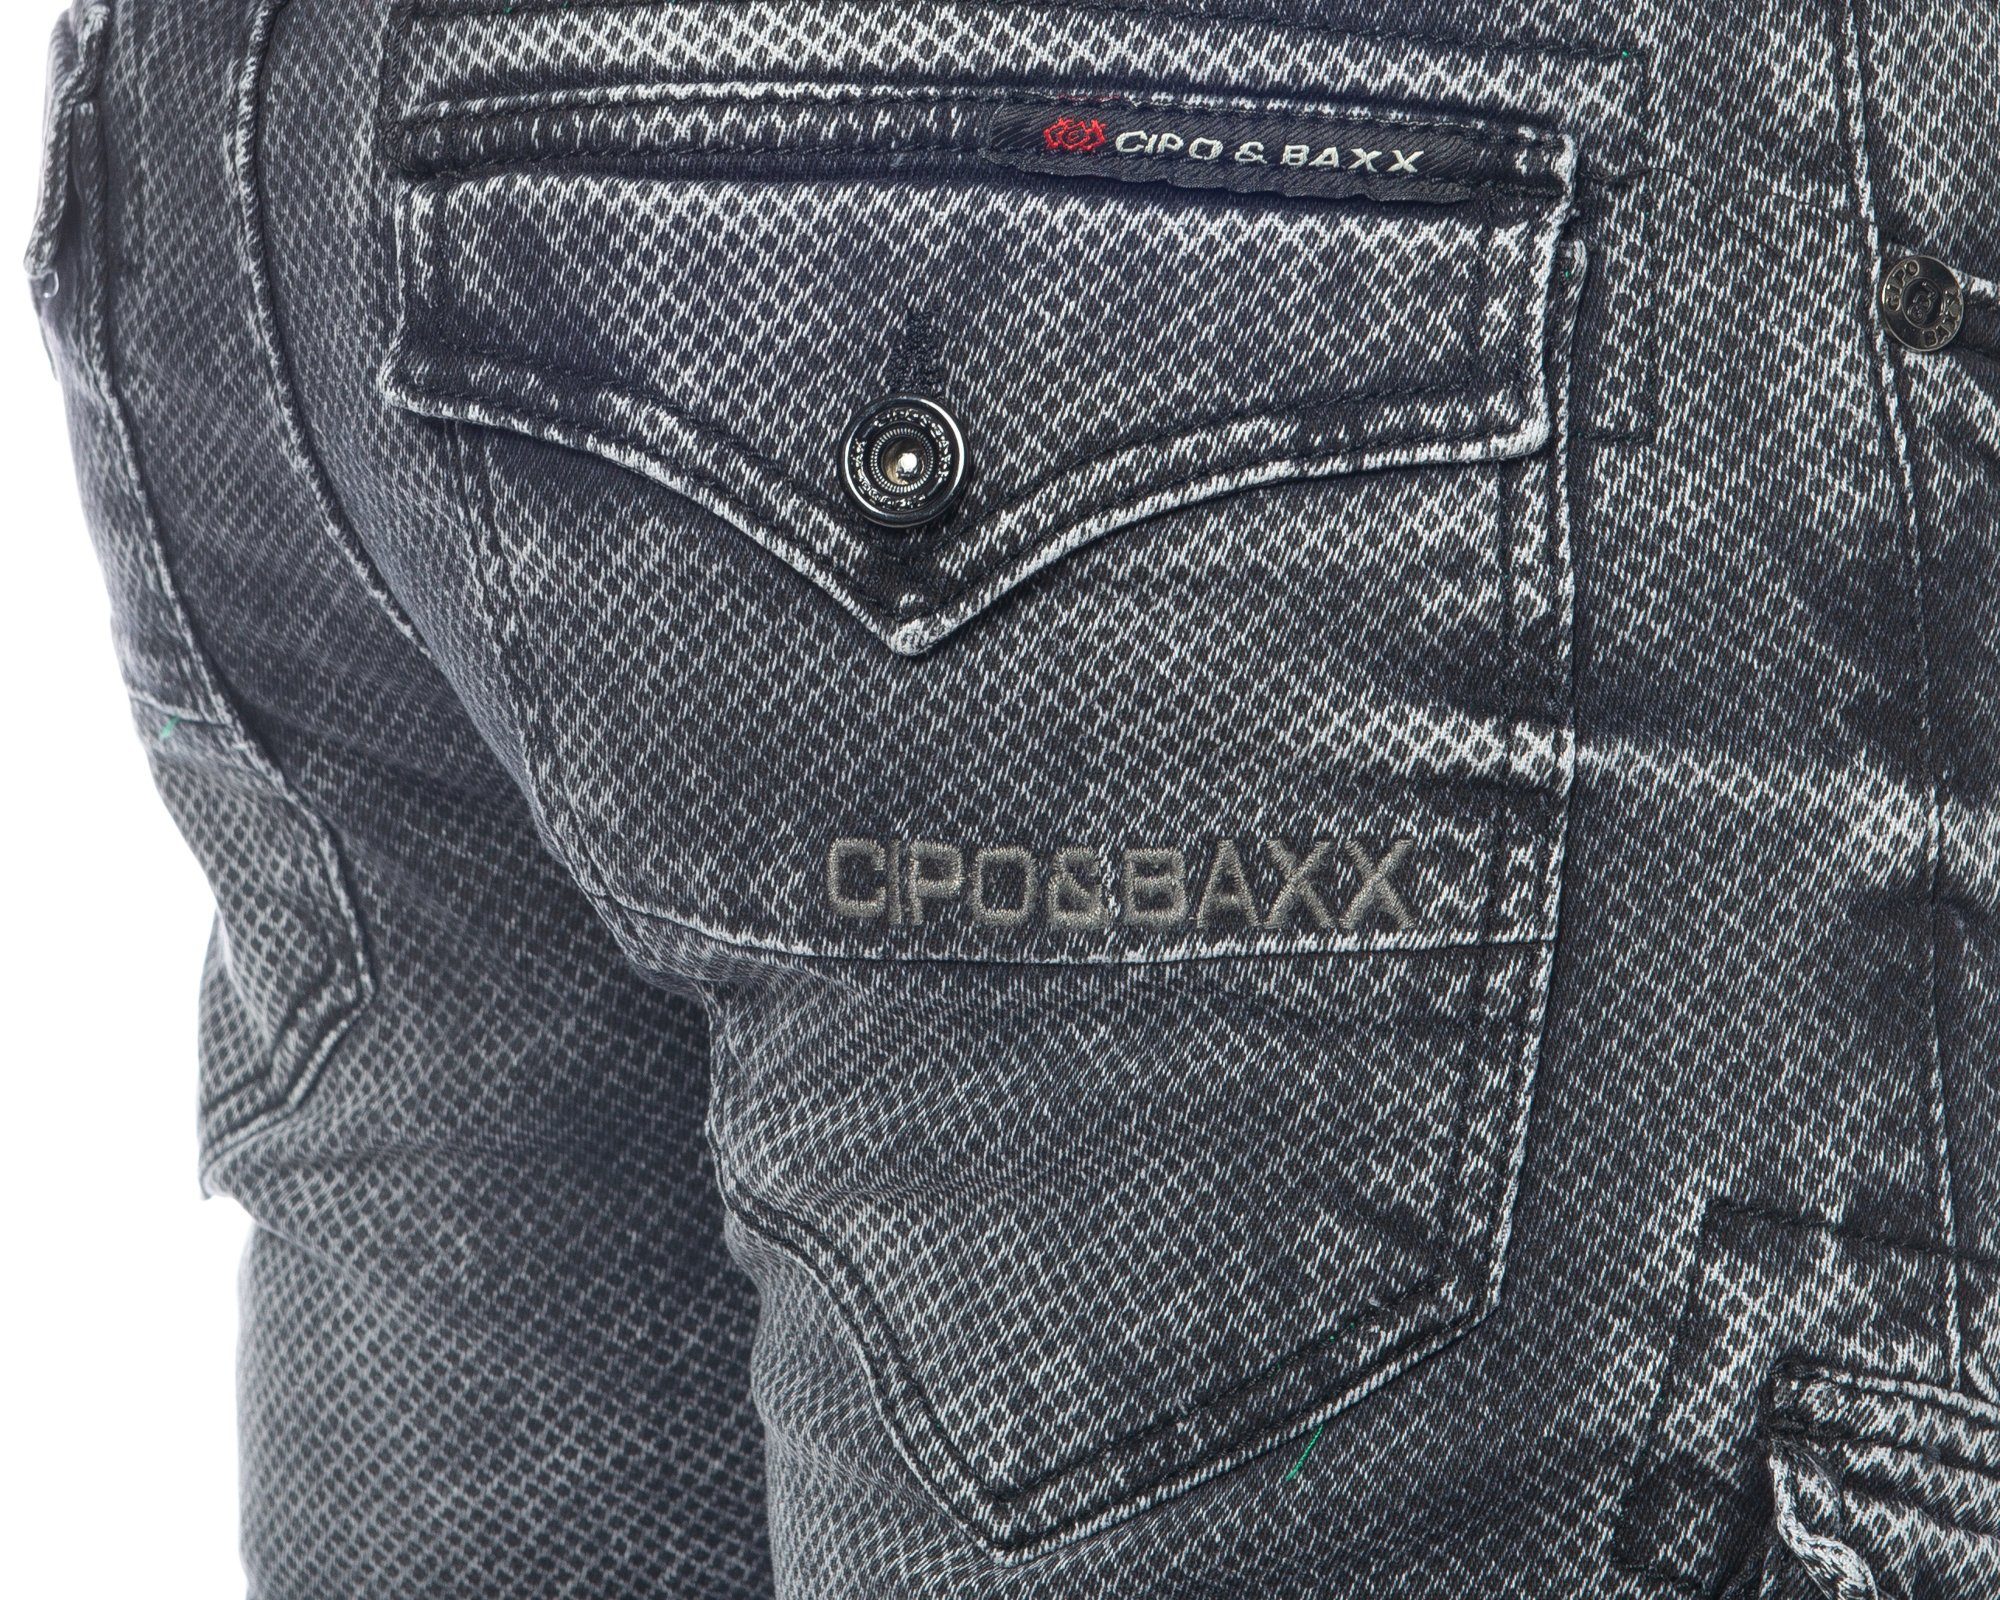 Cipo & Baxx Cargojeans Hose Jeans im weicher Herren Tragekomfort Ausgefallenes Cargo und stylischen Stoffmuster Design schwarz Cargo